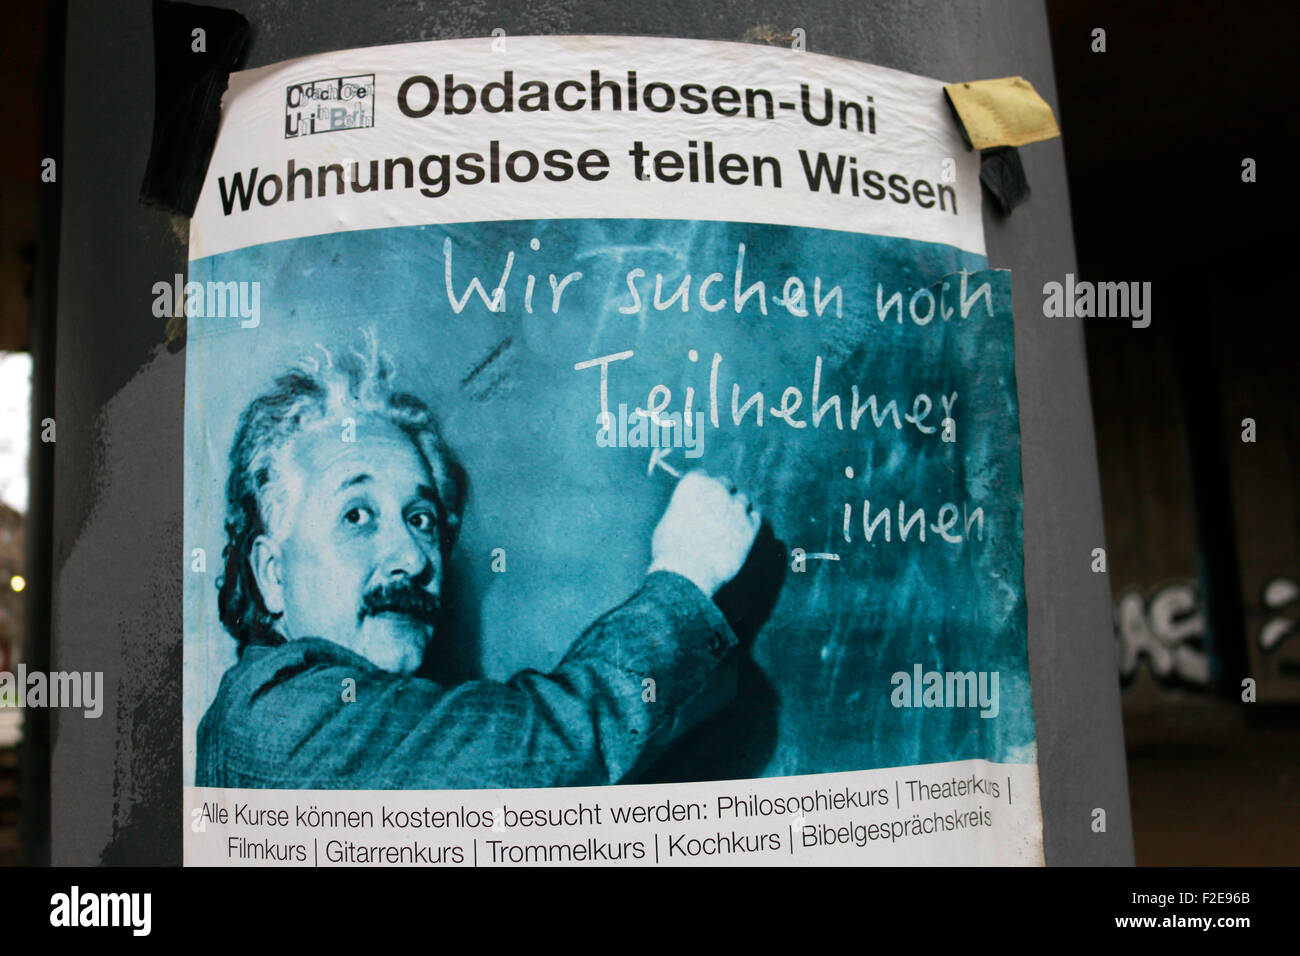 Werbung fuer Obdachlosen-Uni mit einem Bild von Albert Einstein, Berlín Tiergarten. Foto de stock